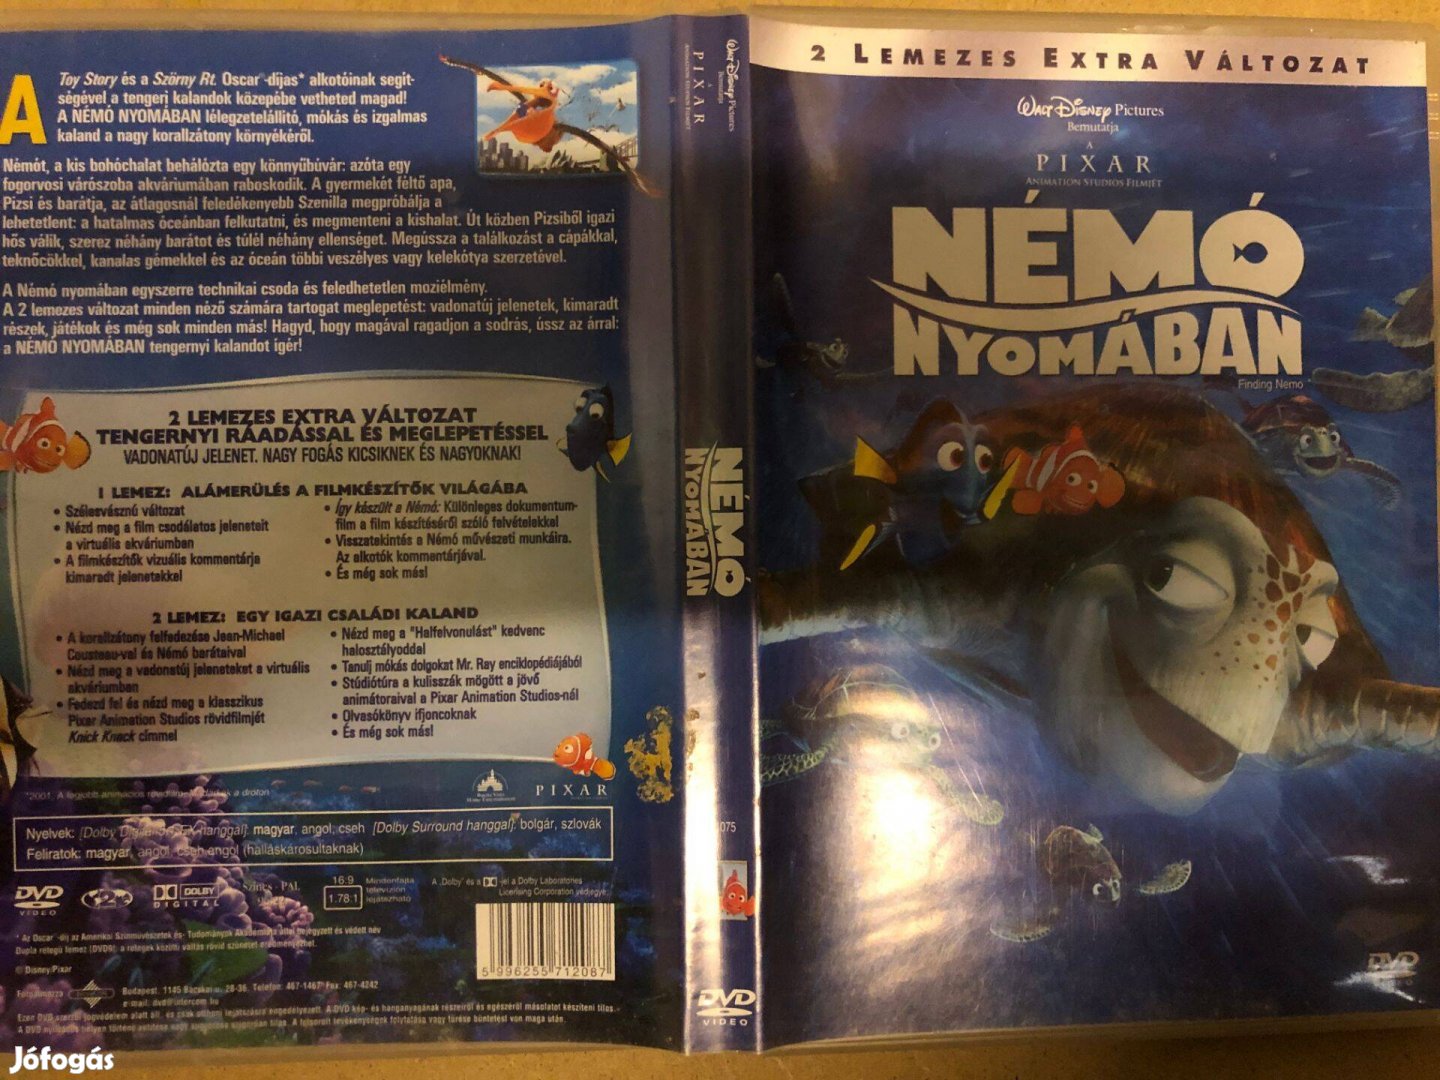 Némó nyomában Disney Pixar (duplalemezes változat) DVD